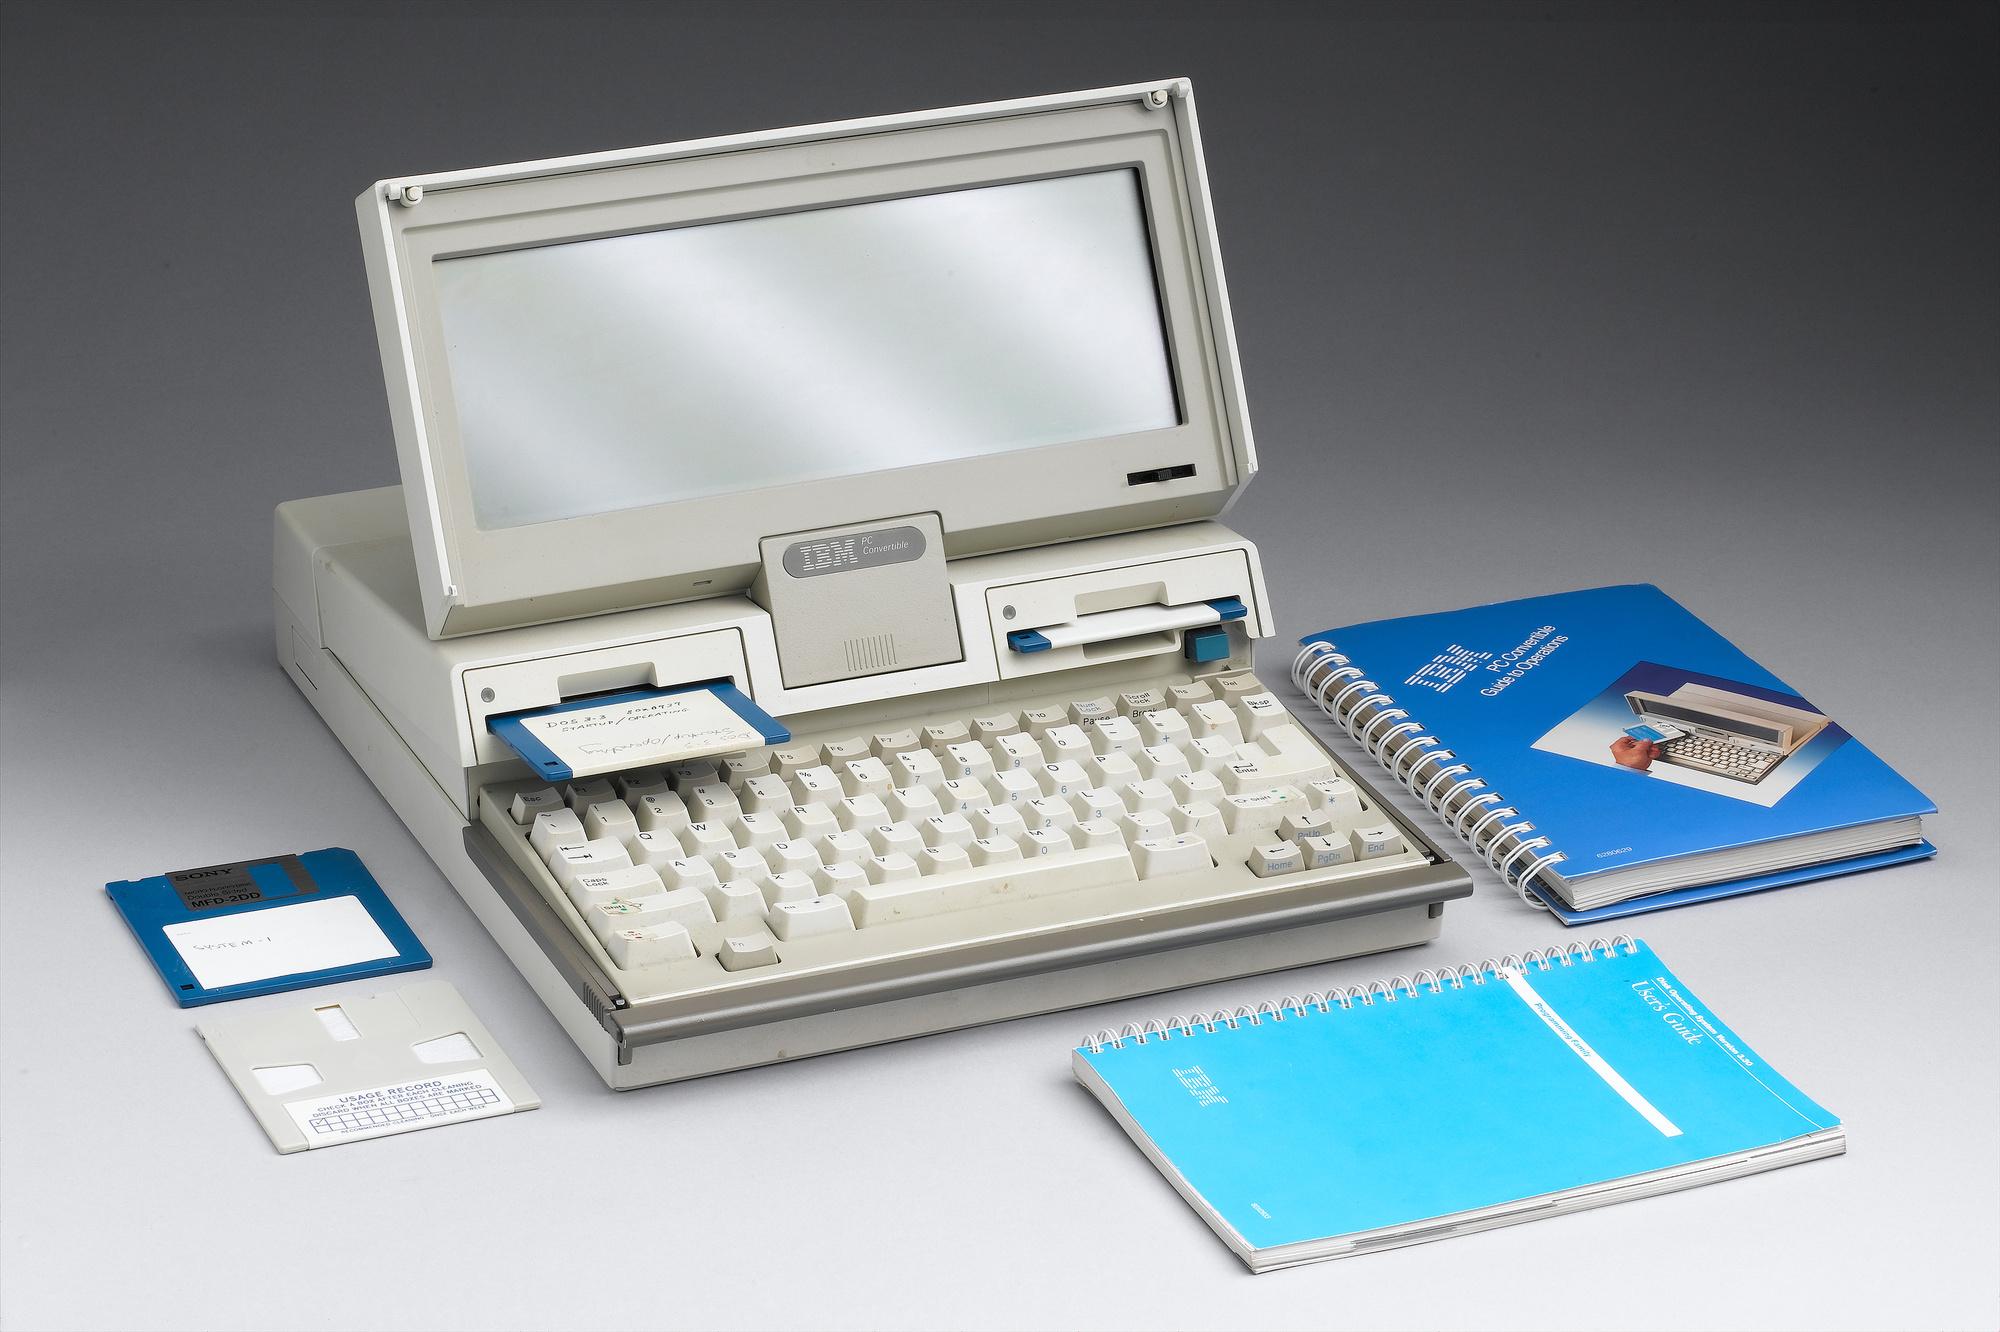 Een IBM laptop model 5140 uit 1987-1988.